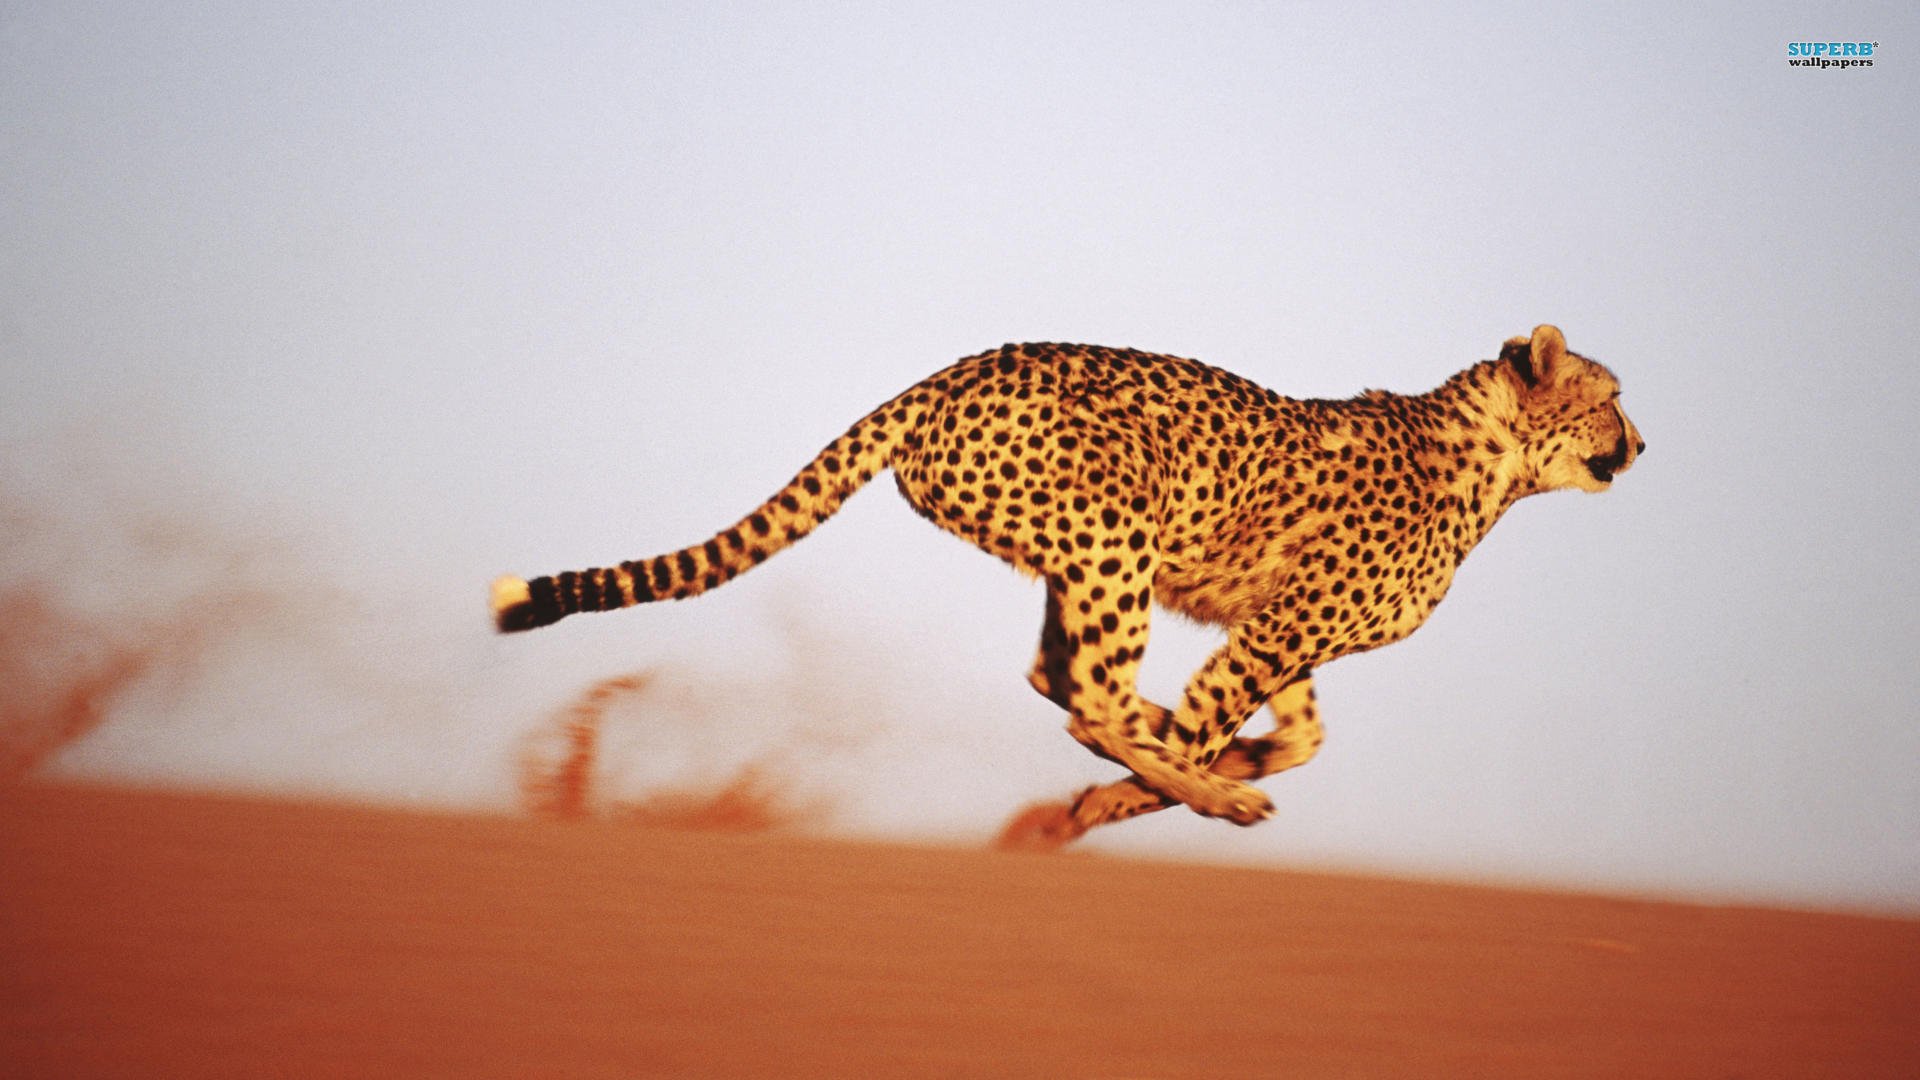 running cheetah wallpaper